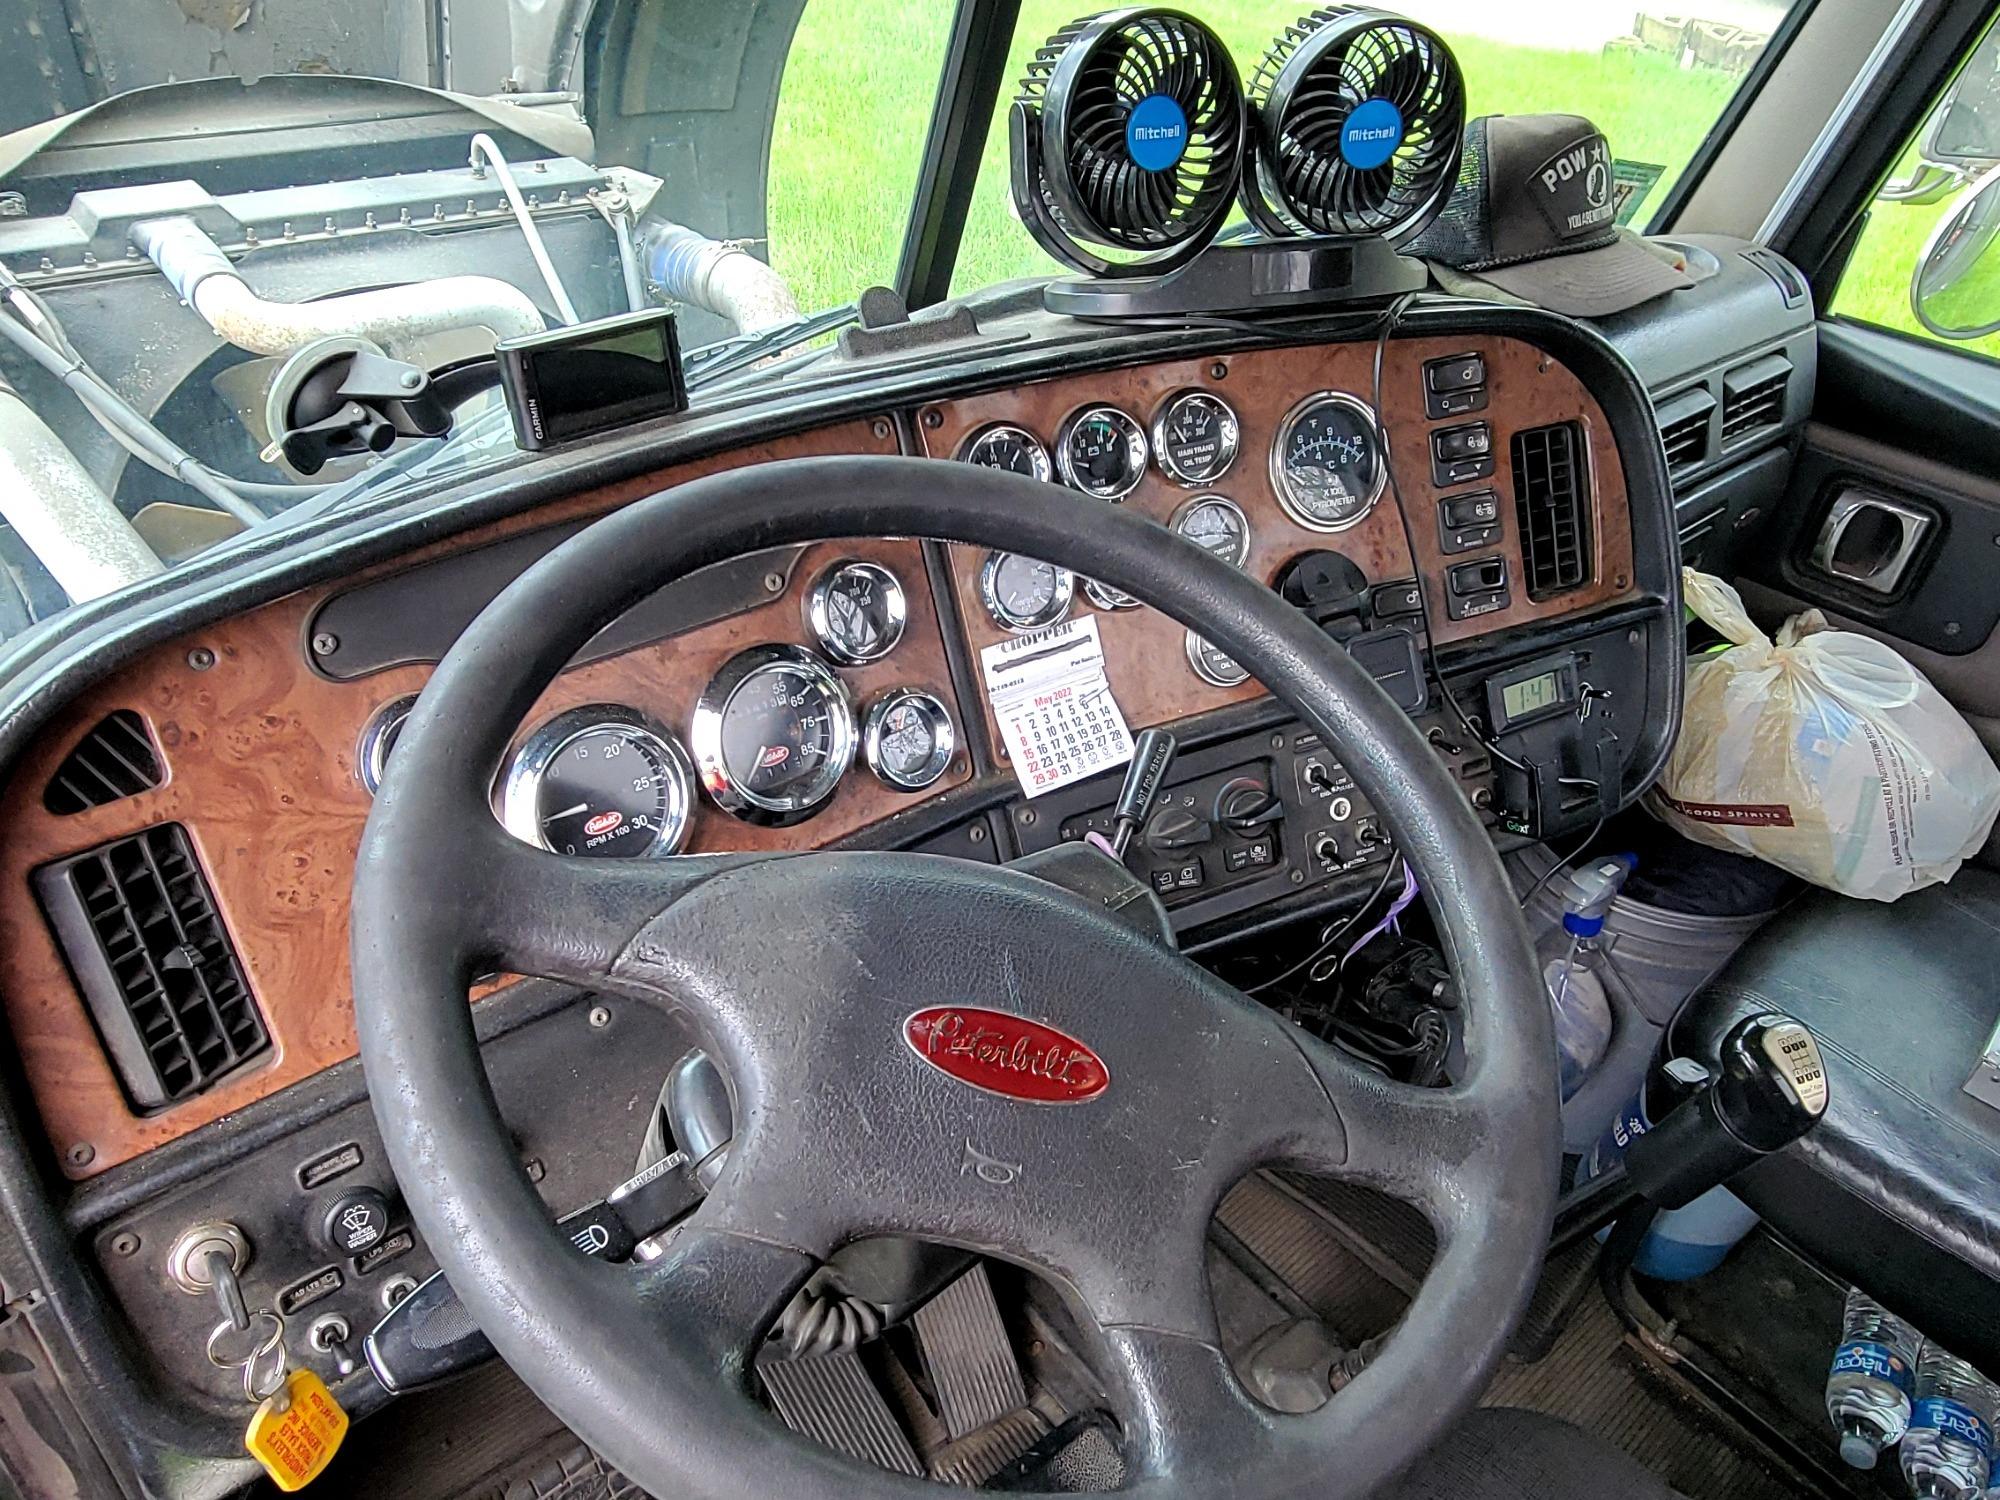 2005 Peterbilt Model 379 Tandem Axle Truck Tractor (Unit # 33) **Read Description**